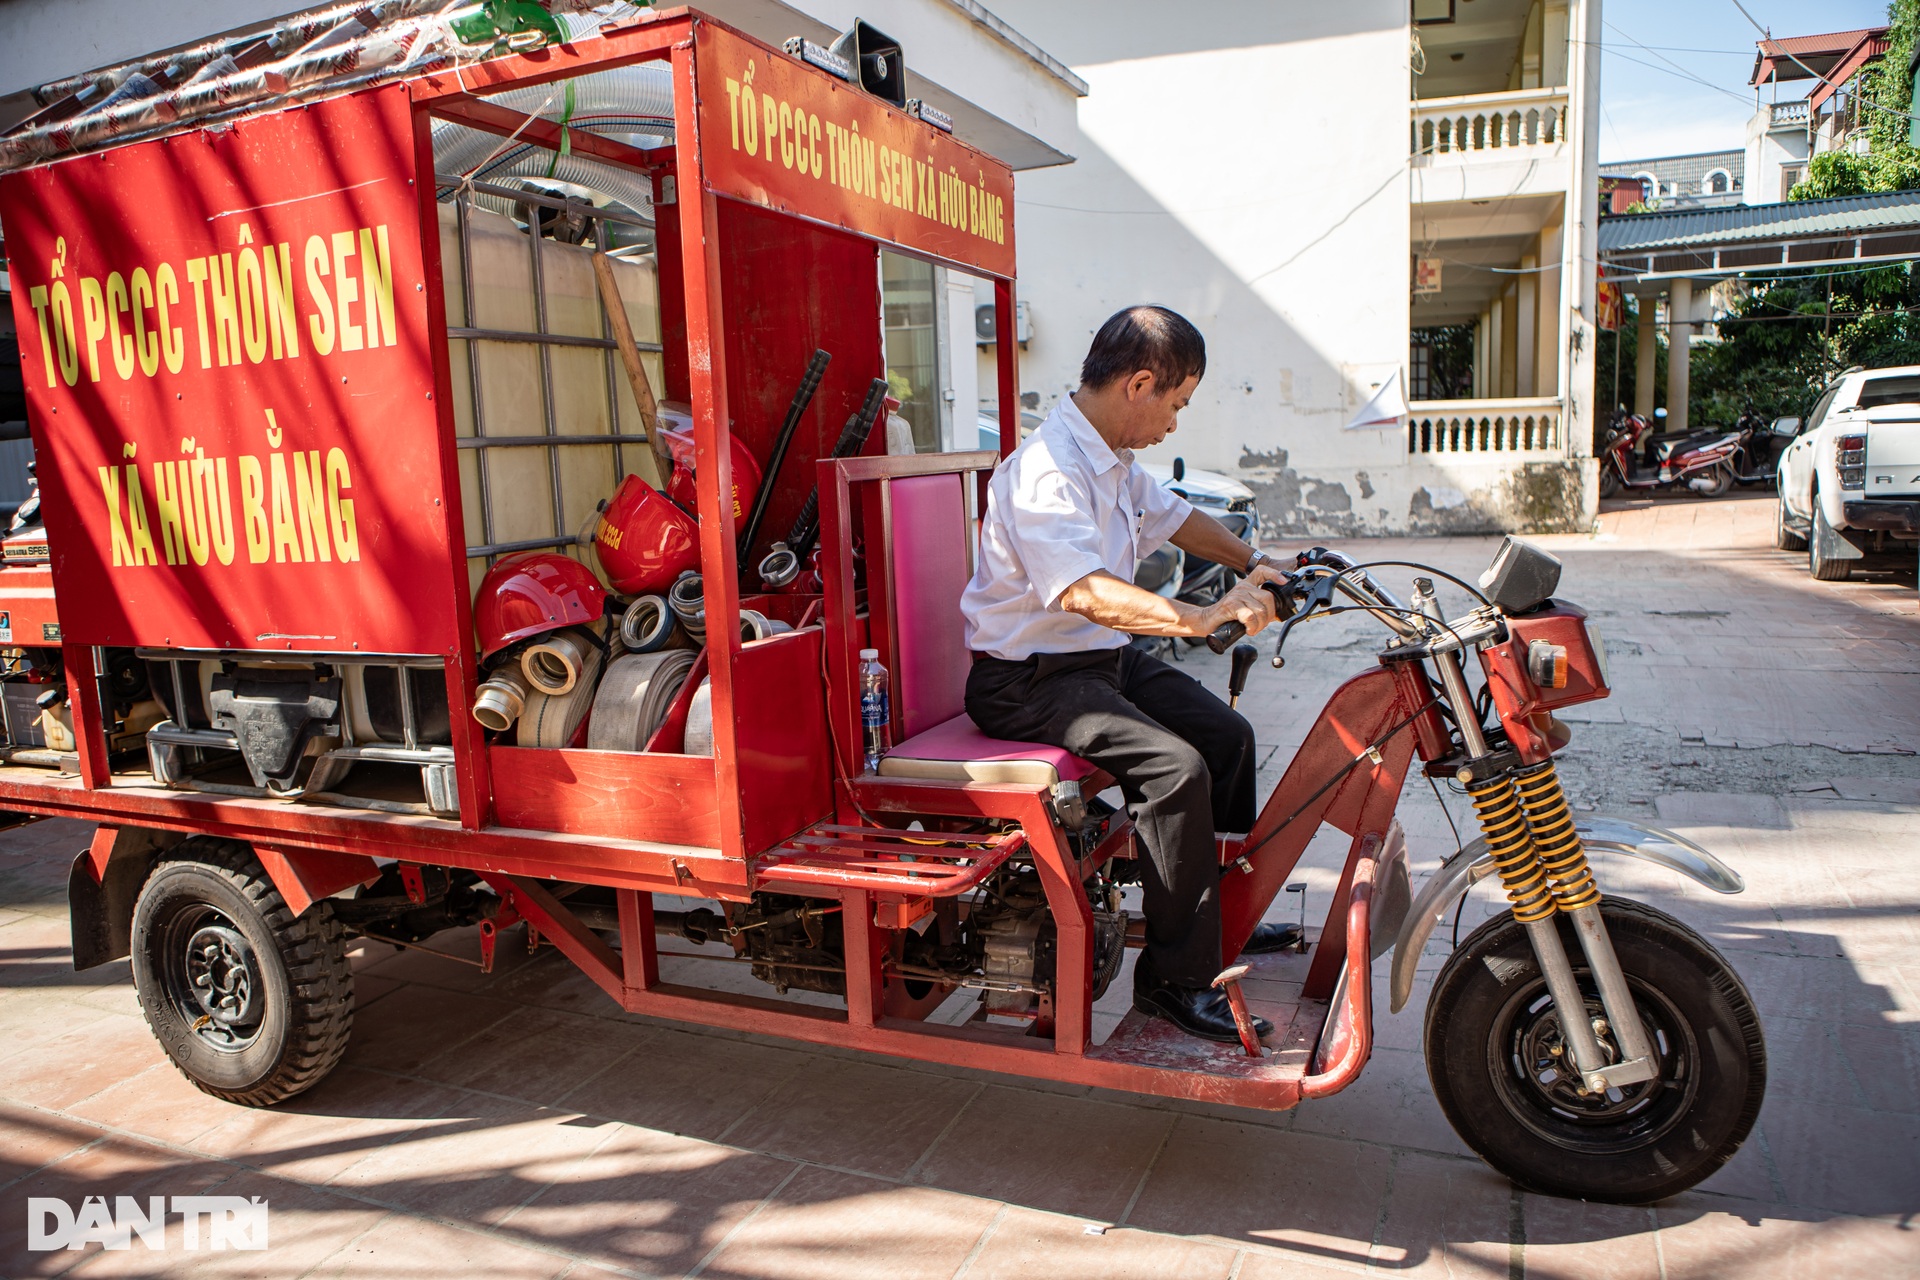 Đội cứu hỏa ba gác ở Hà Nội: Có cháy, anh em tạm gác công việc đi dập lửa - 2